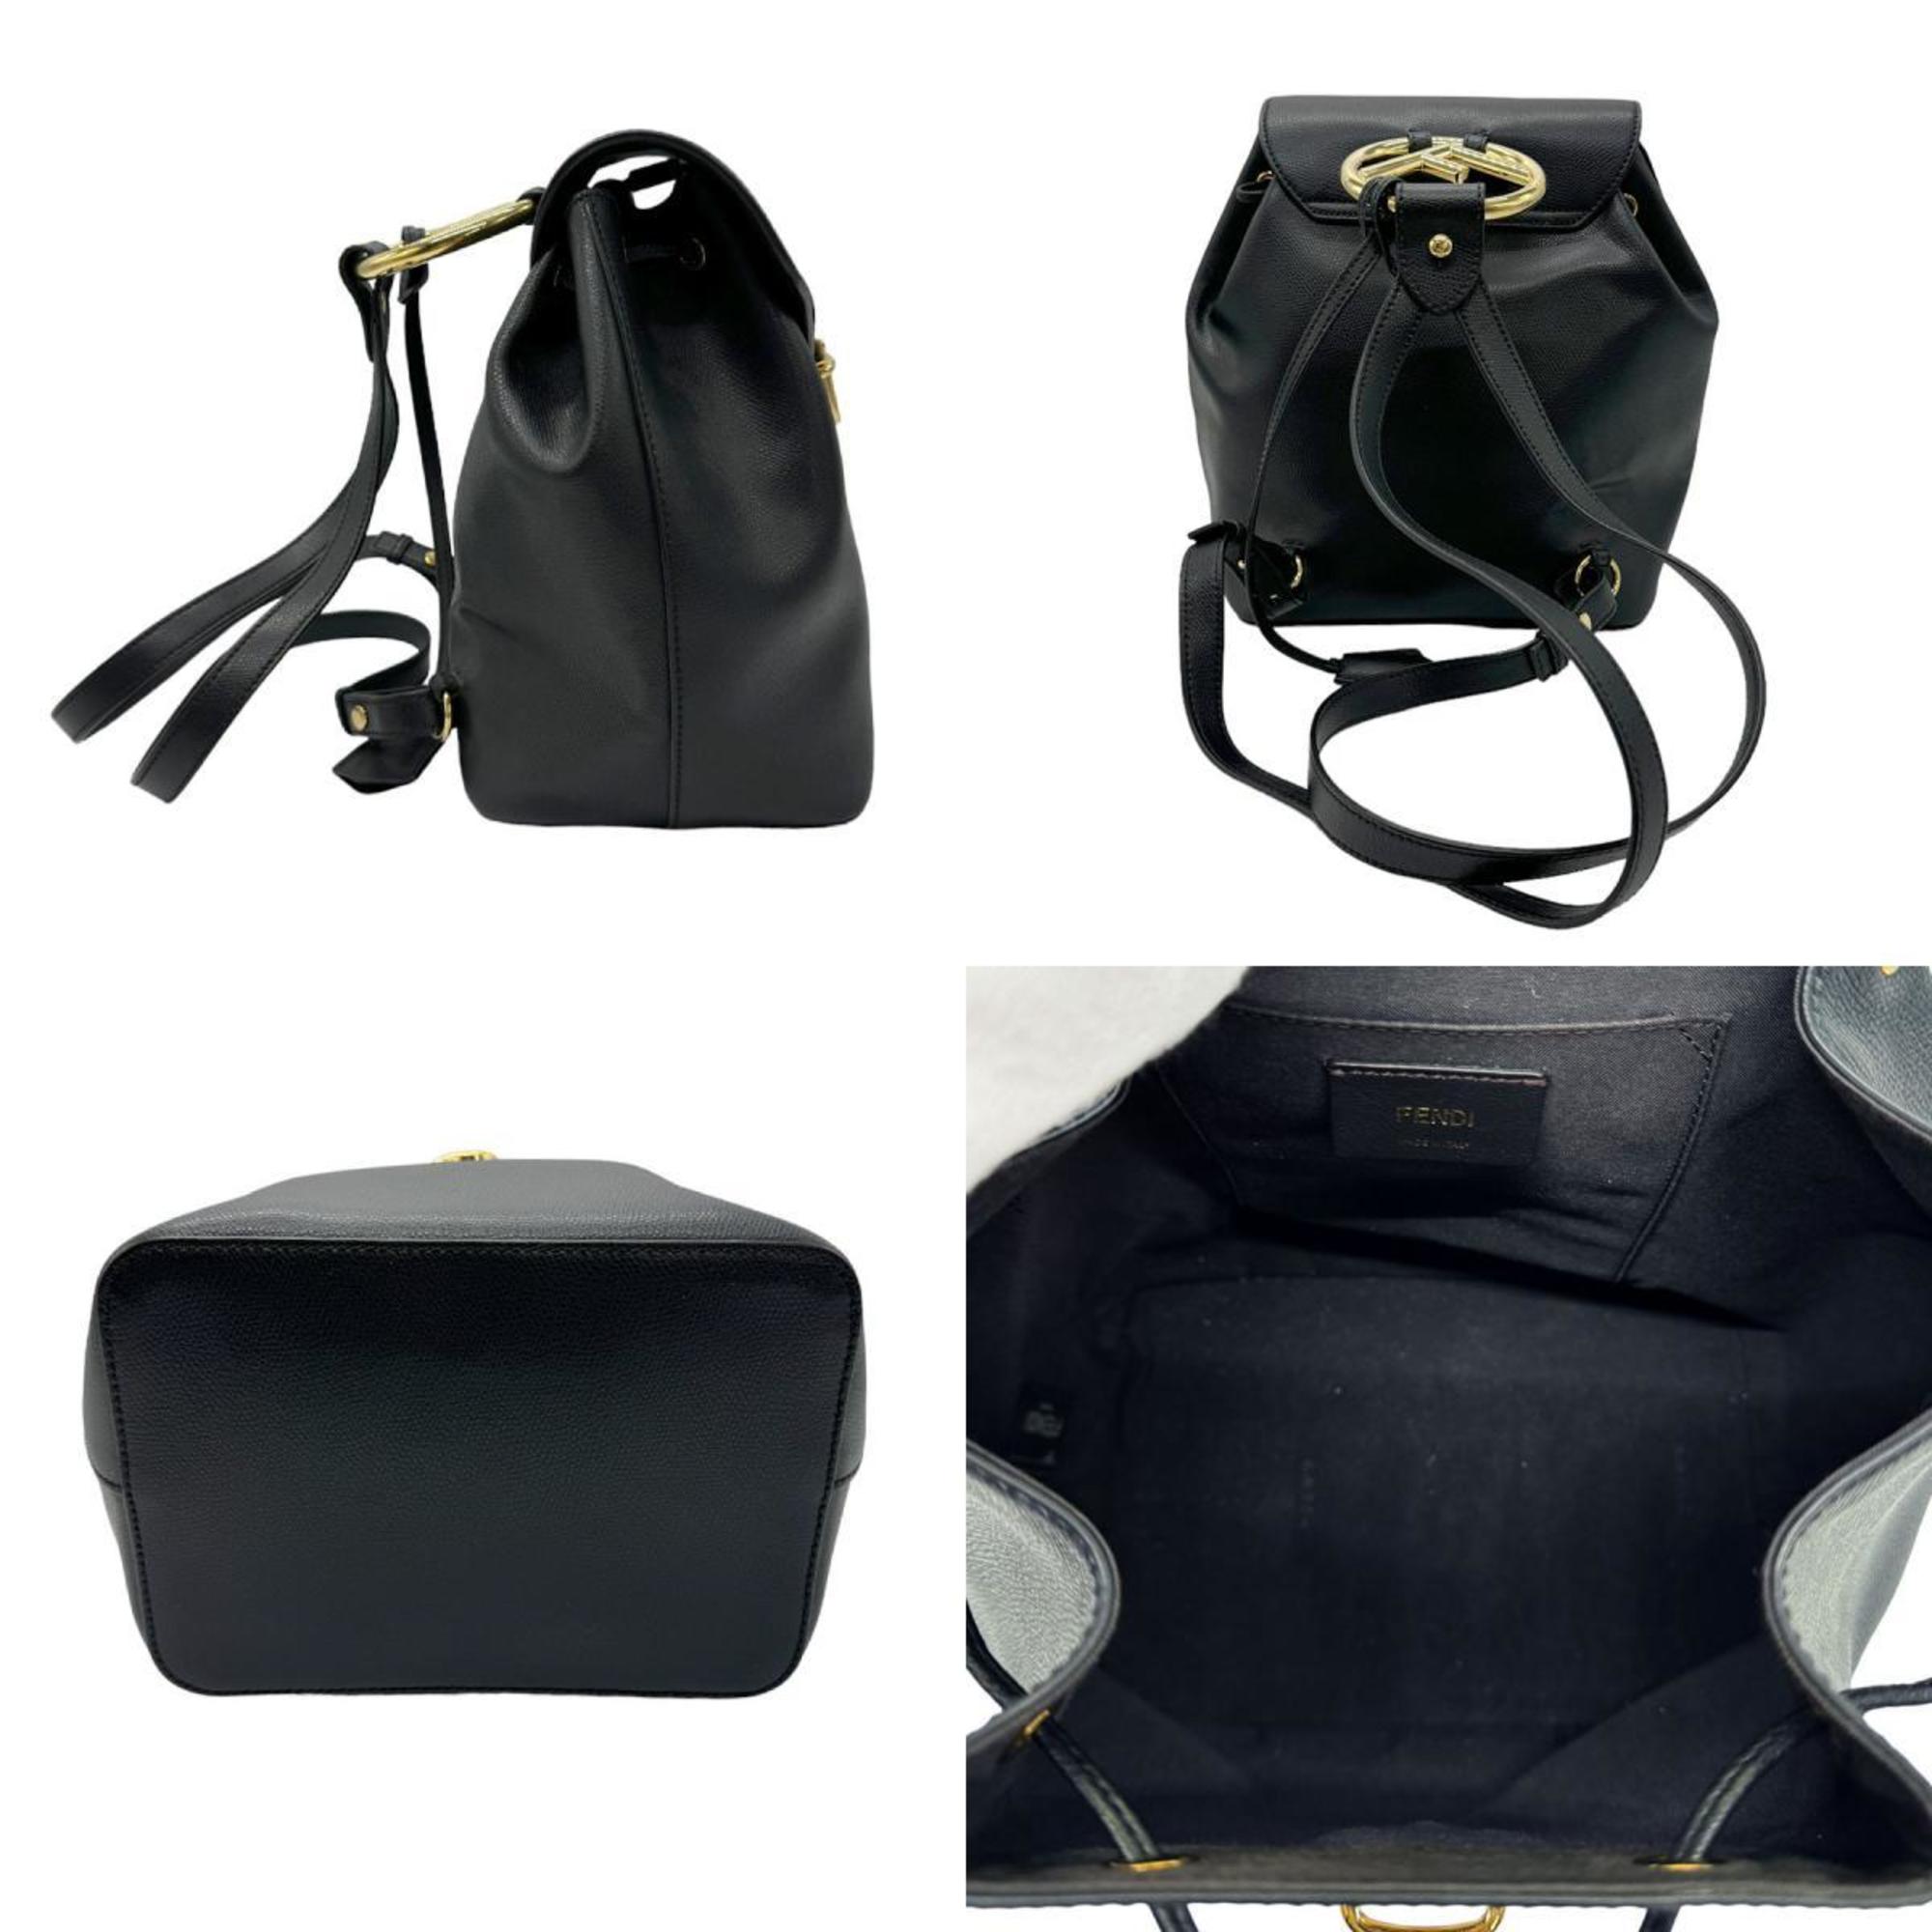 FENDI Backpack F Is Leather Black Women's 8BZ043 A18B z0589